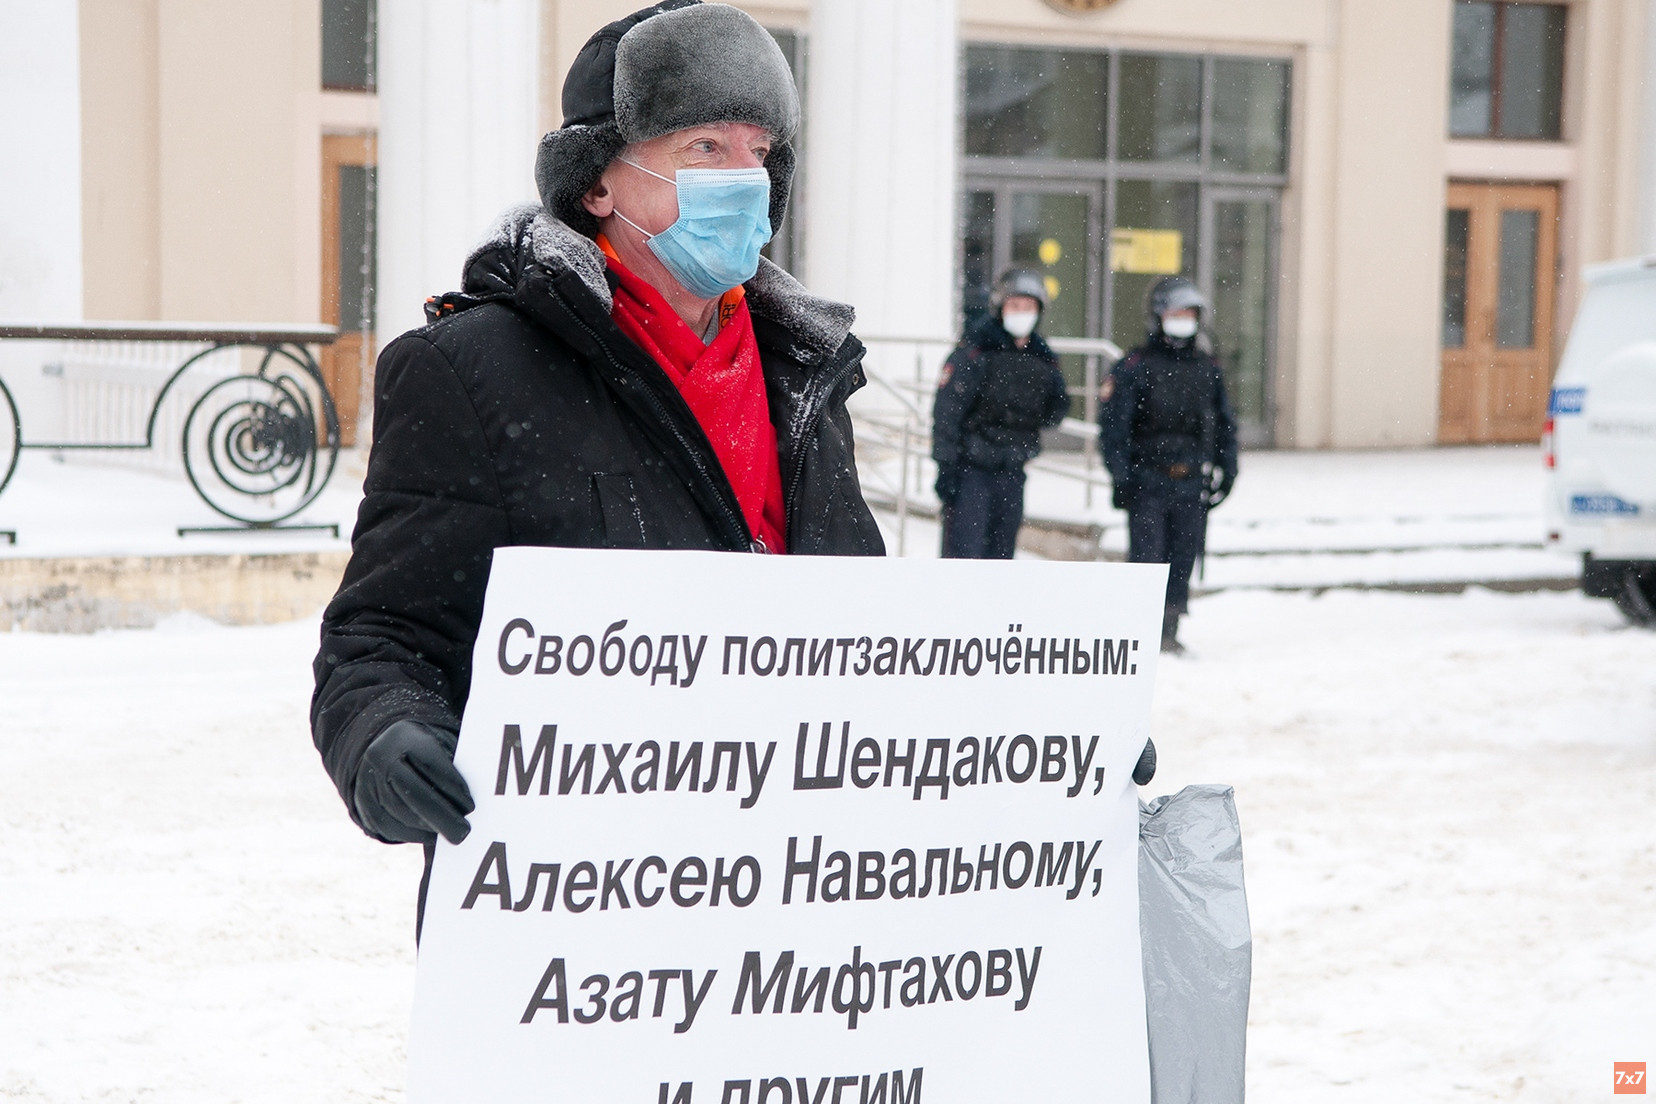 Администрация Костромы согласовала митинг КПРФ против политических репрессий и «за смену курса»